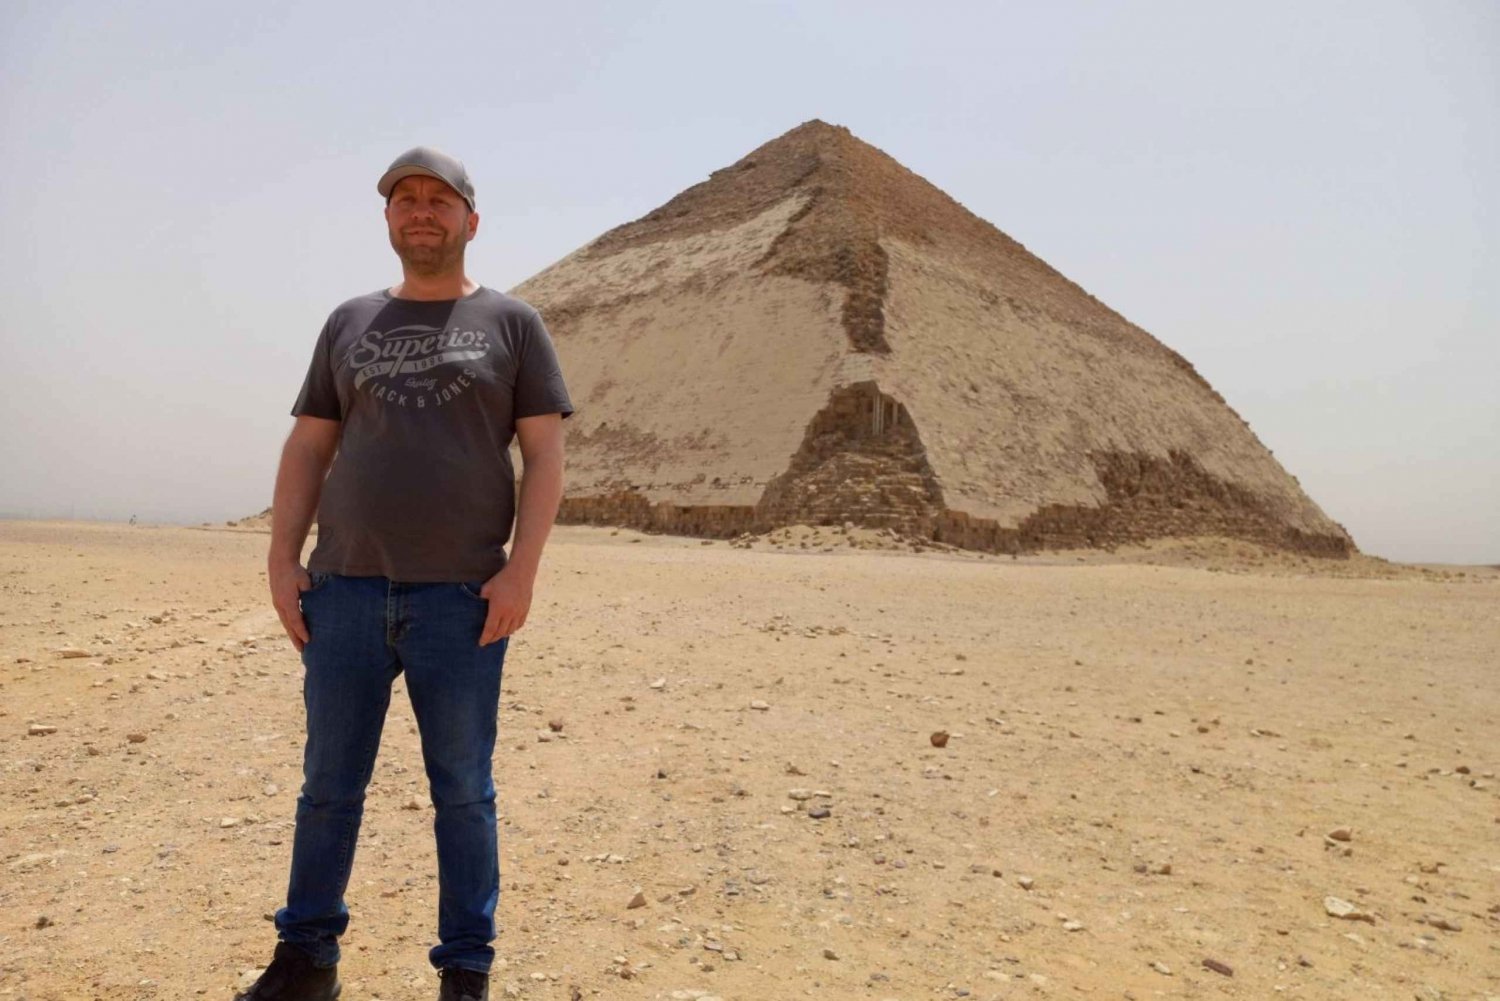 Au départ du Caire/Giza : Visite de Sakkara, des pyramides de Dahchour et de Memphis